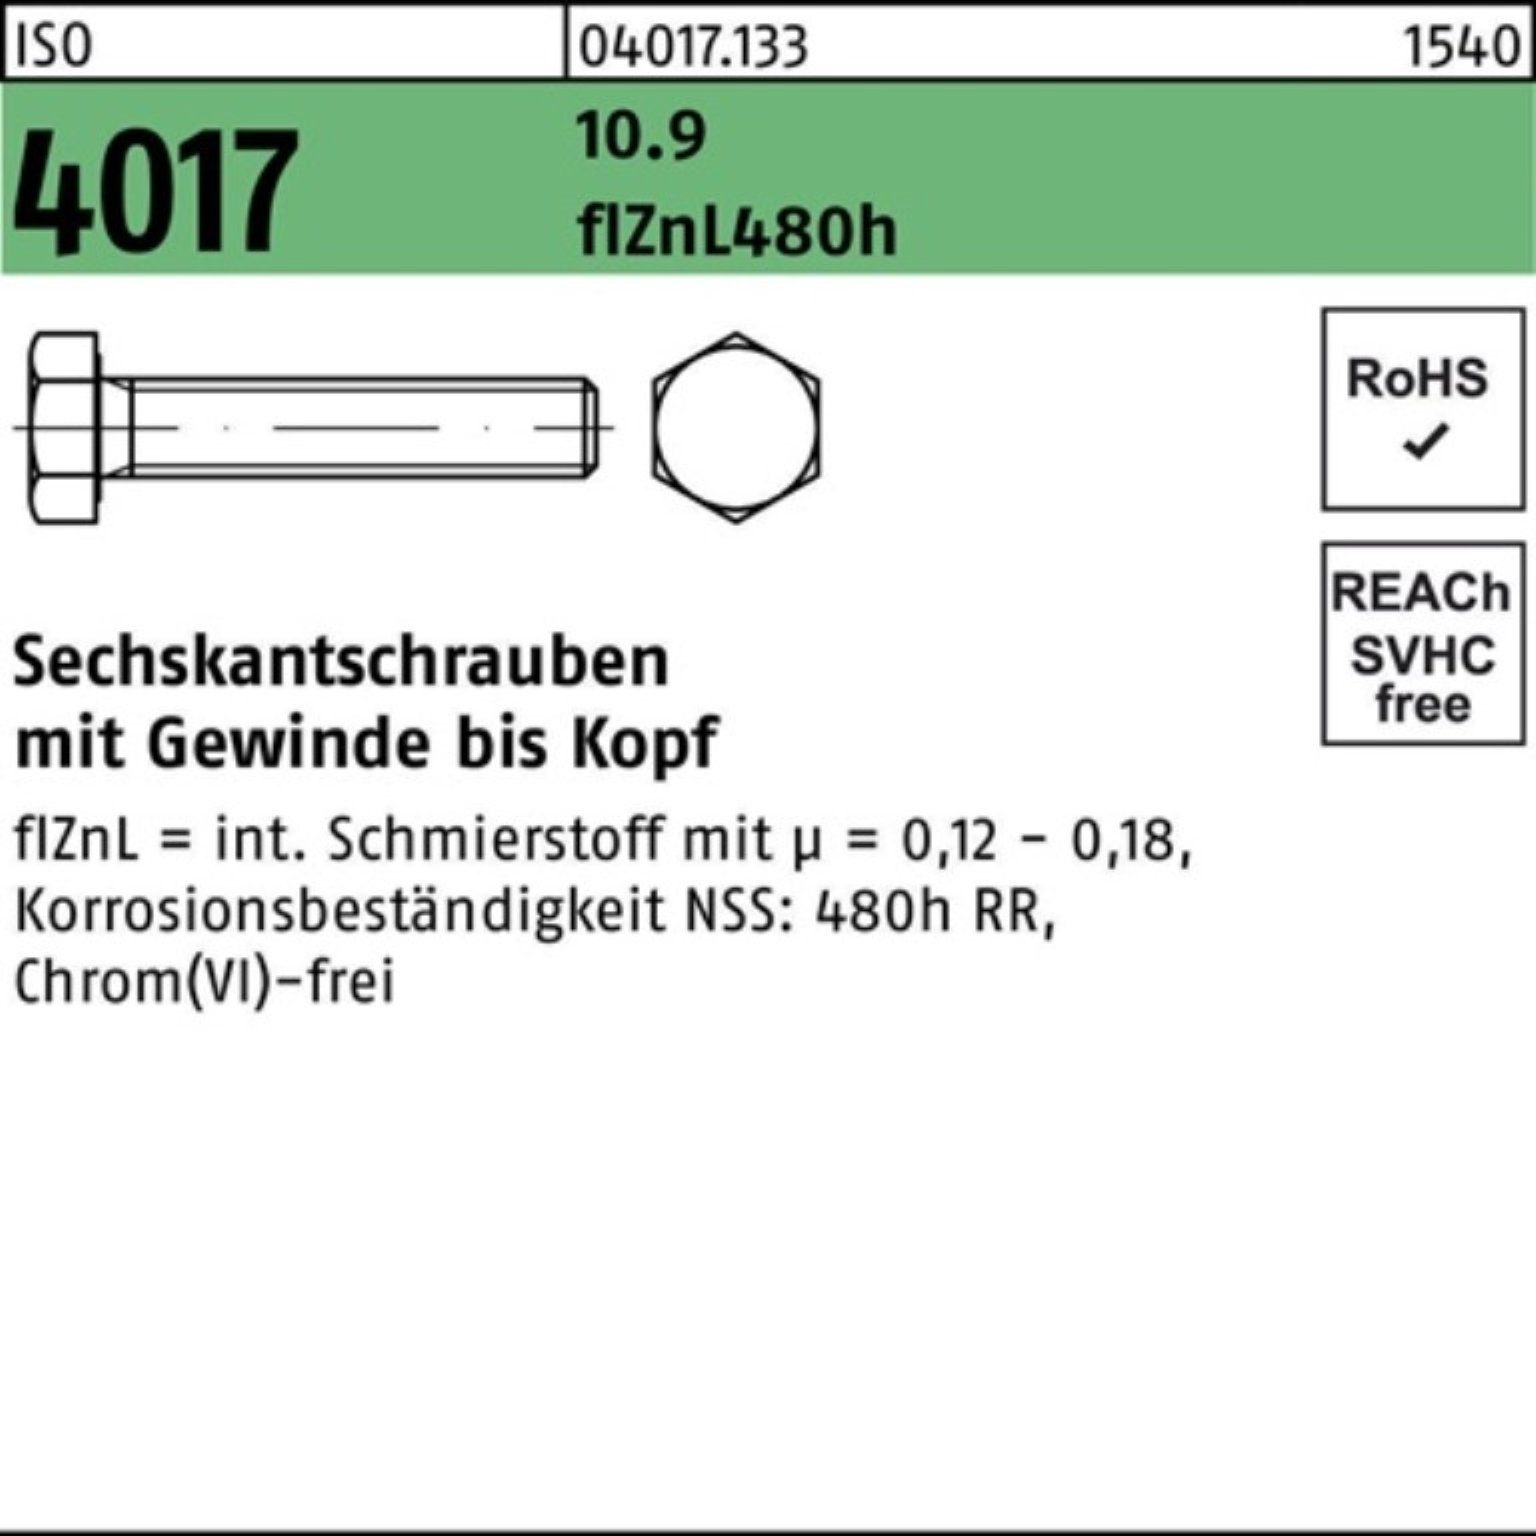 Bufab Sechskantschraube zinklamellenb. 20 45 VG 10.9 Sechskantschraube Pack 200er ISO 4017 M8x